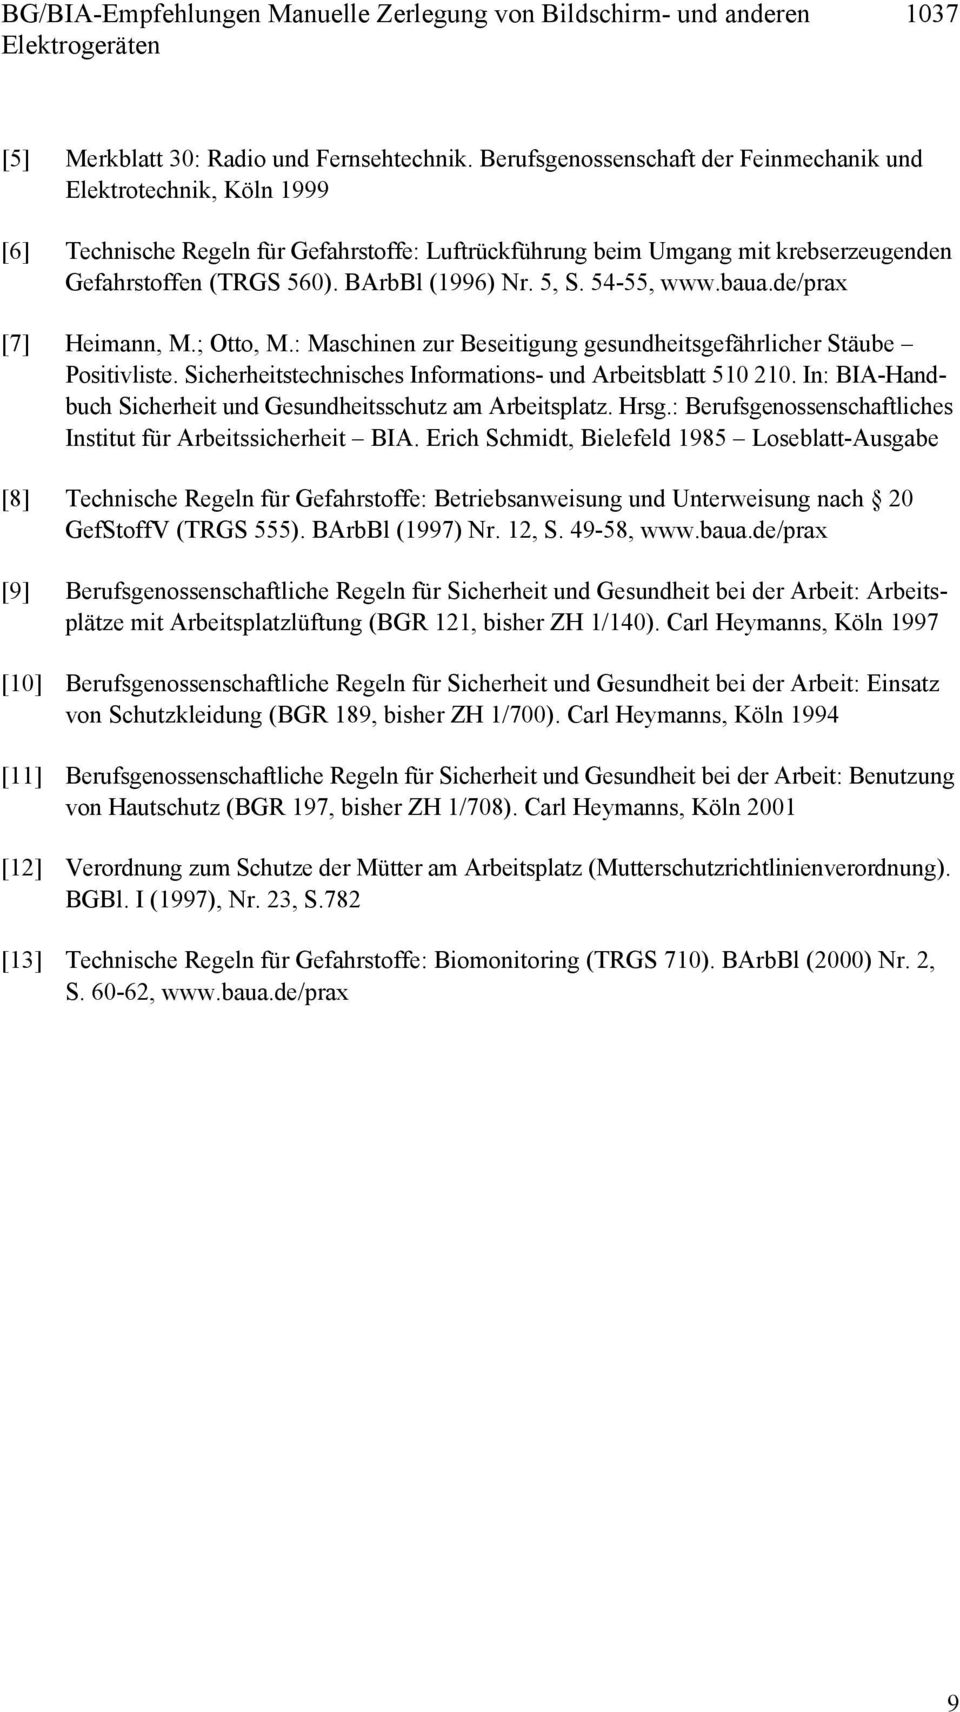 baua.de/prax [7] Heimann, M.; Otto, M.: Maschinen zur Beseitigung gesundheitsgefährlicher Stäube Positivliste. Sicherheitstechnisches Informations- und Arbeitsblatt 510 210.